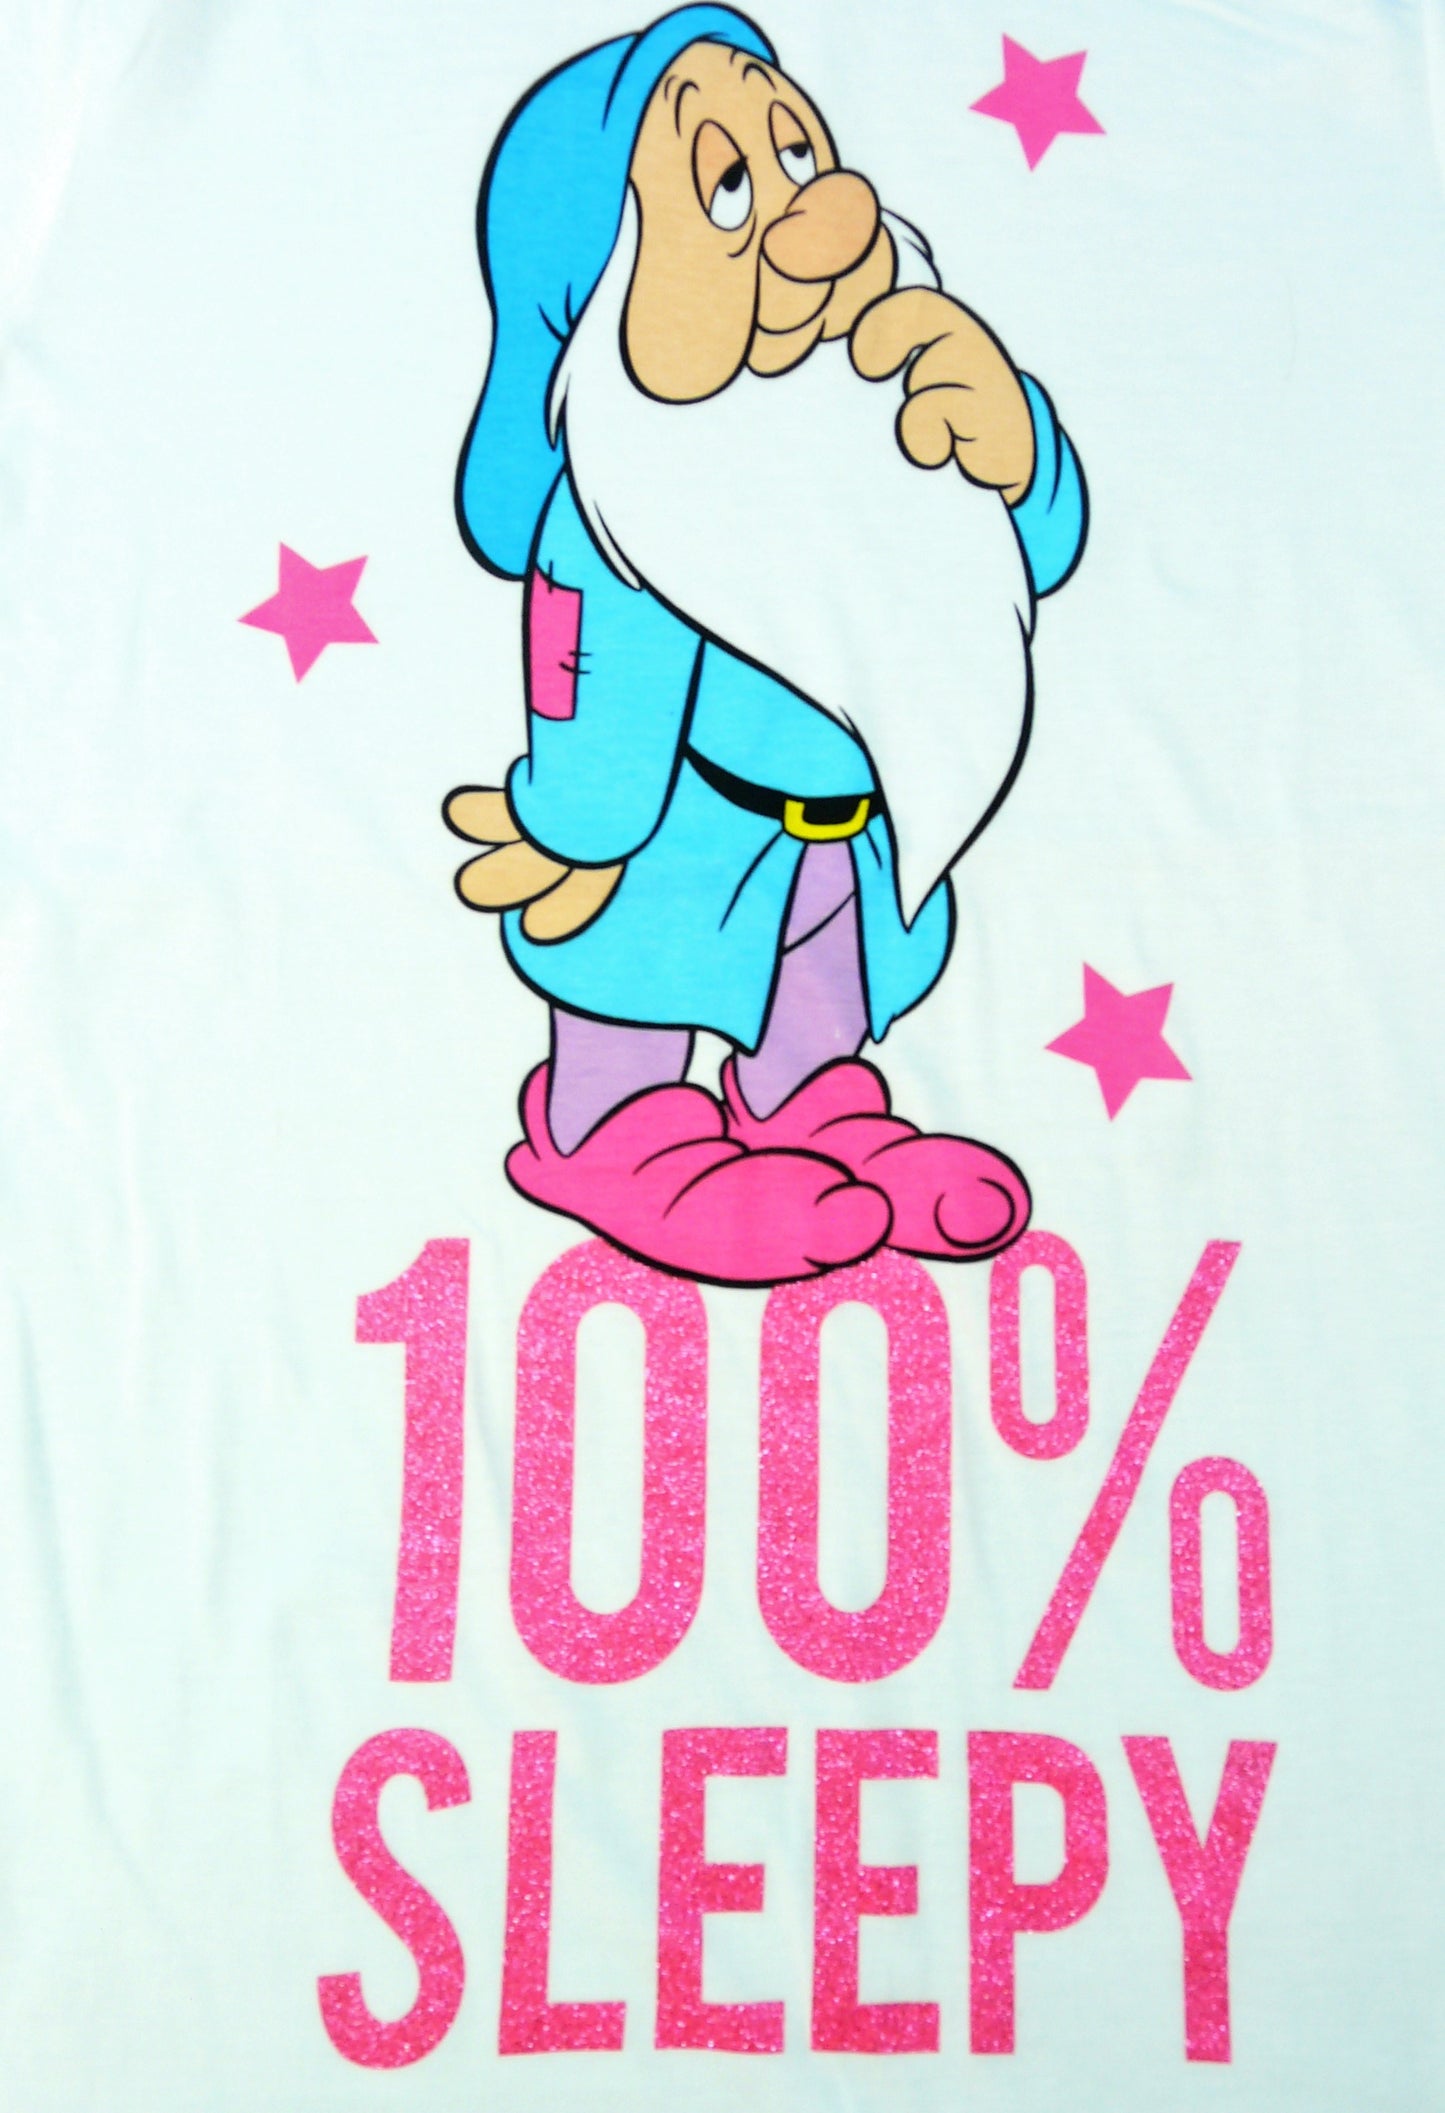 Sleepy Dwarf Ladies Pyjamas 100% Sleepy" Disney Snow White Size 8-14